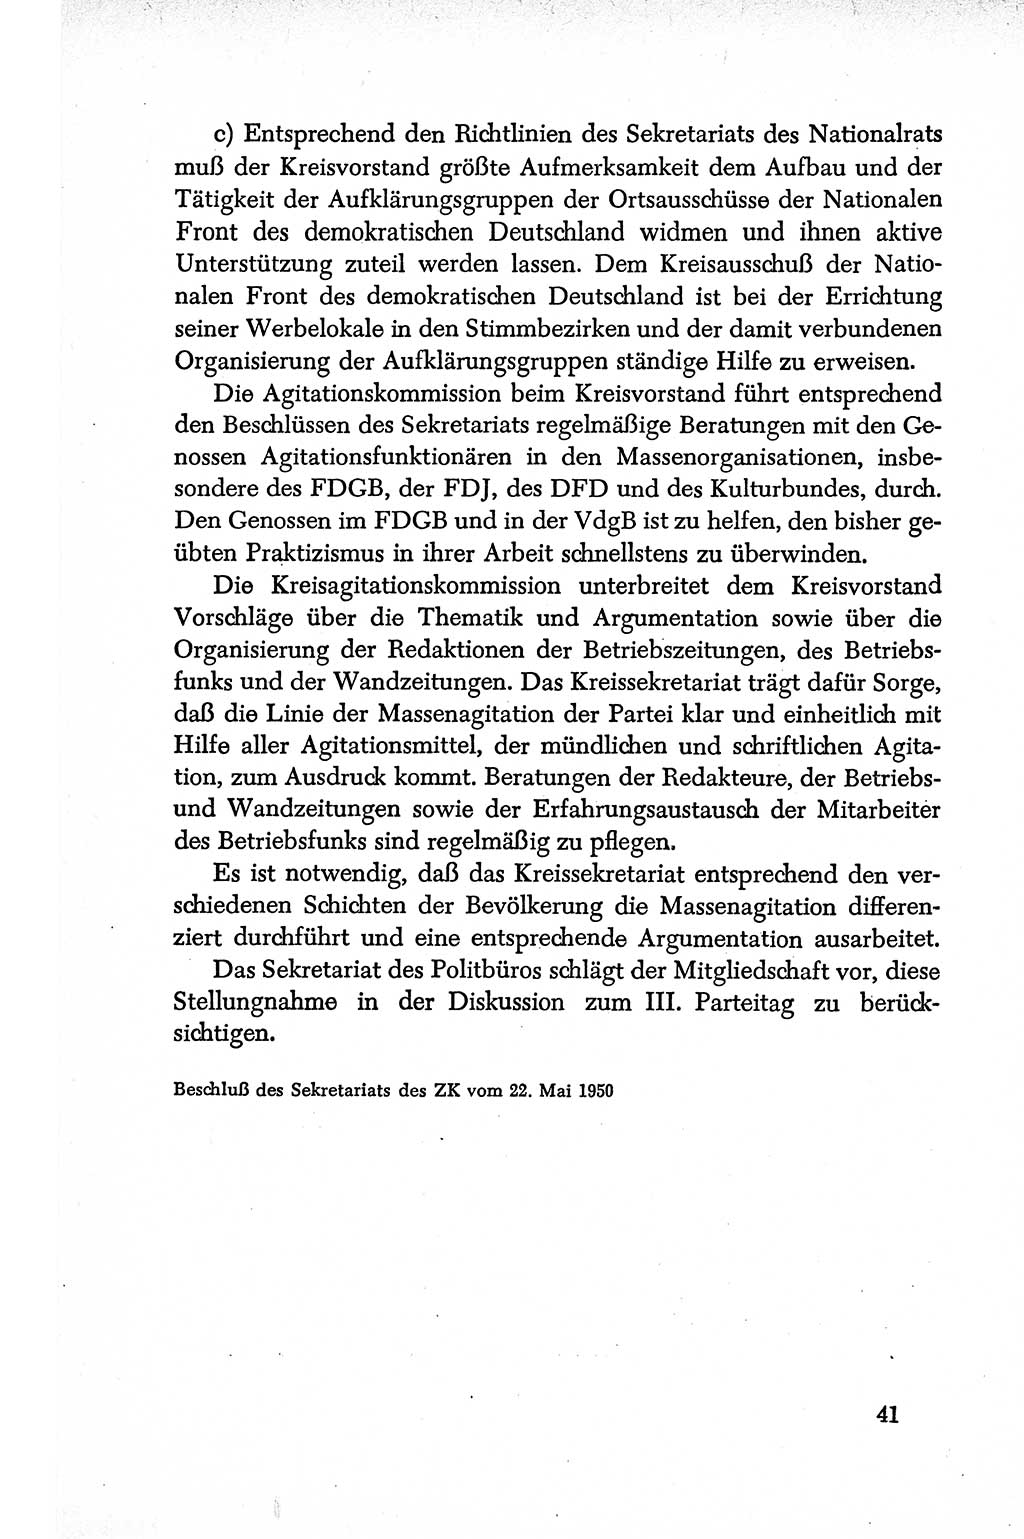 Dokumente der Sozialistischen Einheitspartei Deutschlands (SED) [Deutsche Demokratische Republik (DDR)] 1950-1952, Seite 41 (Dok. SED DDR 1950-1952, S. 41)